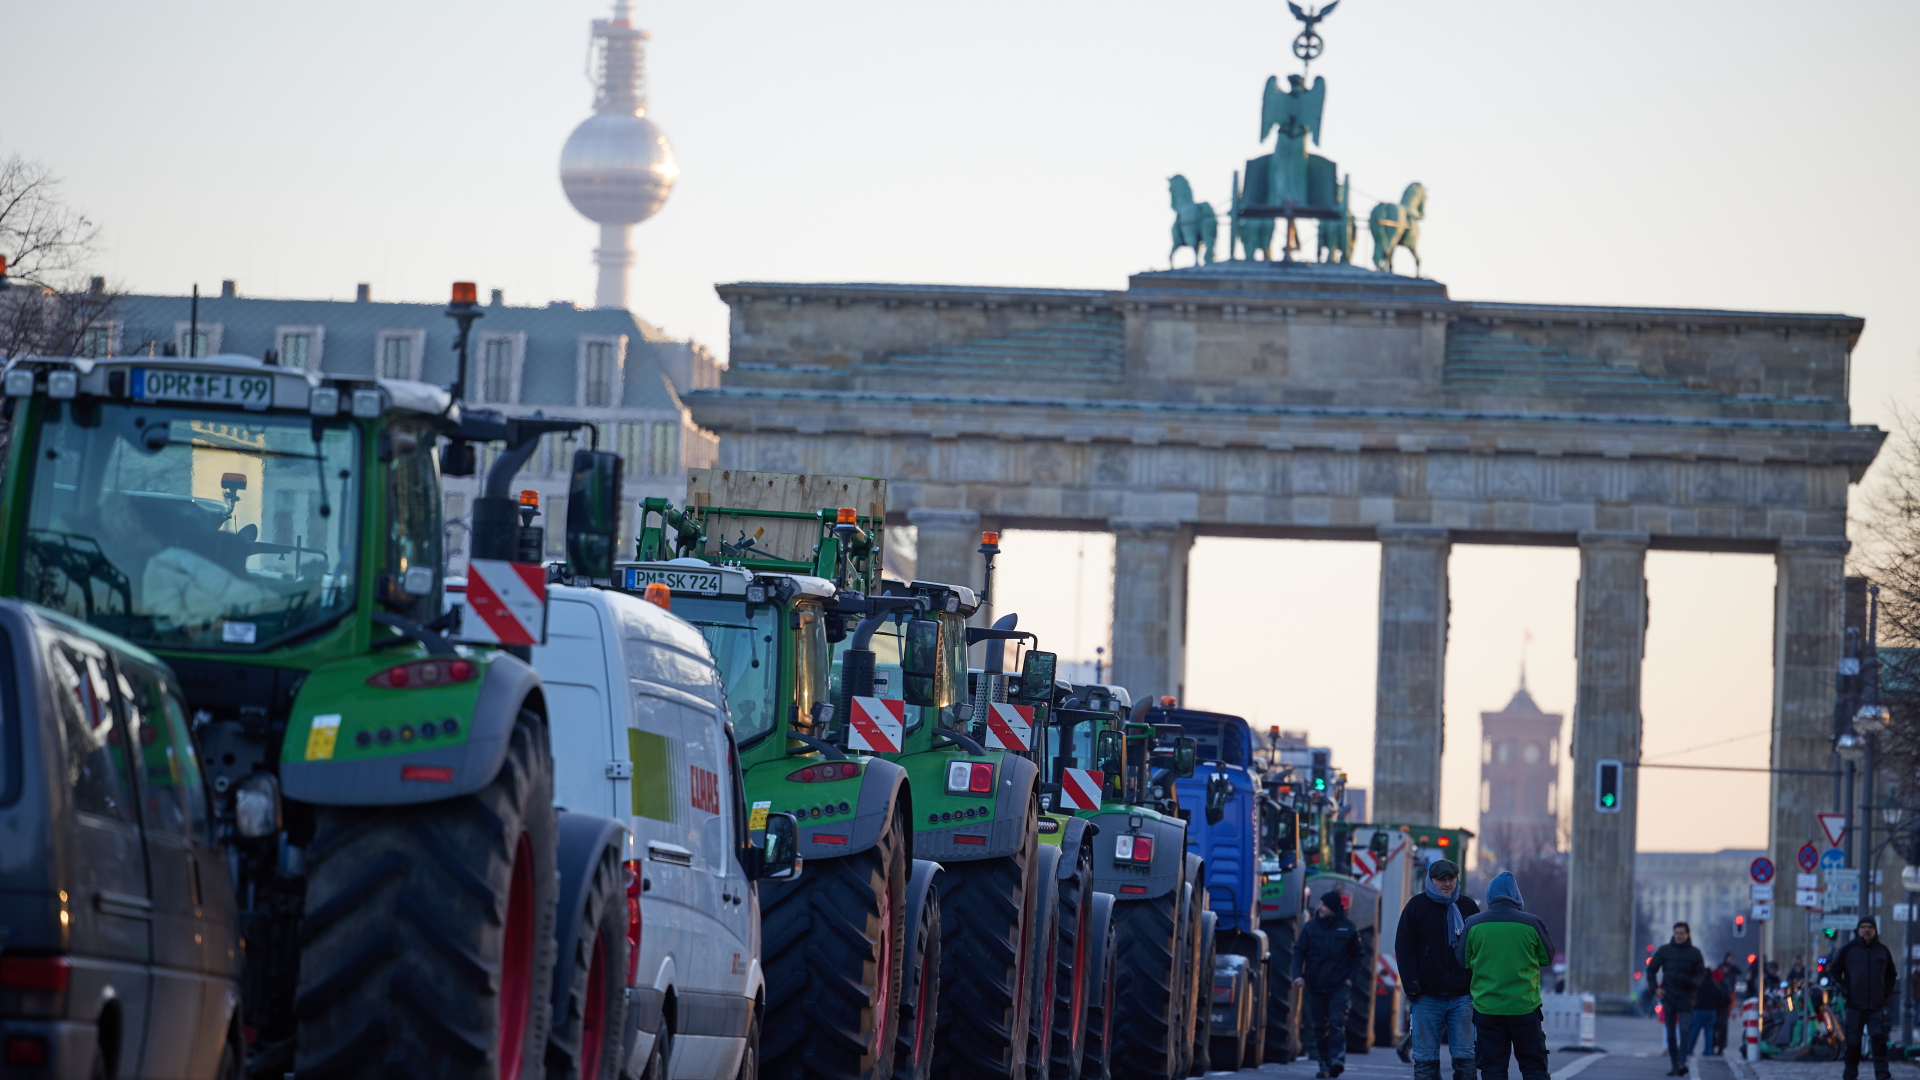 Protest mit Traktoren vor dem Brandenburger